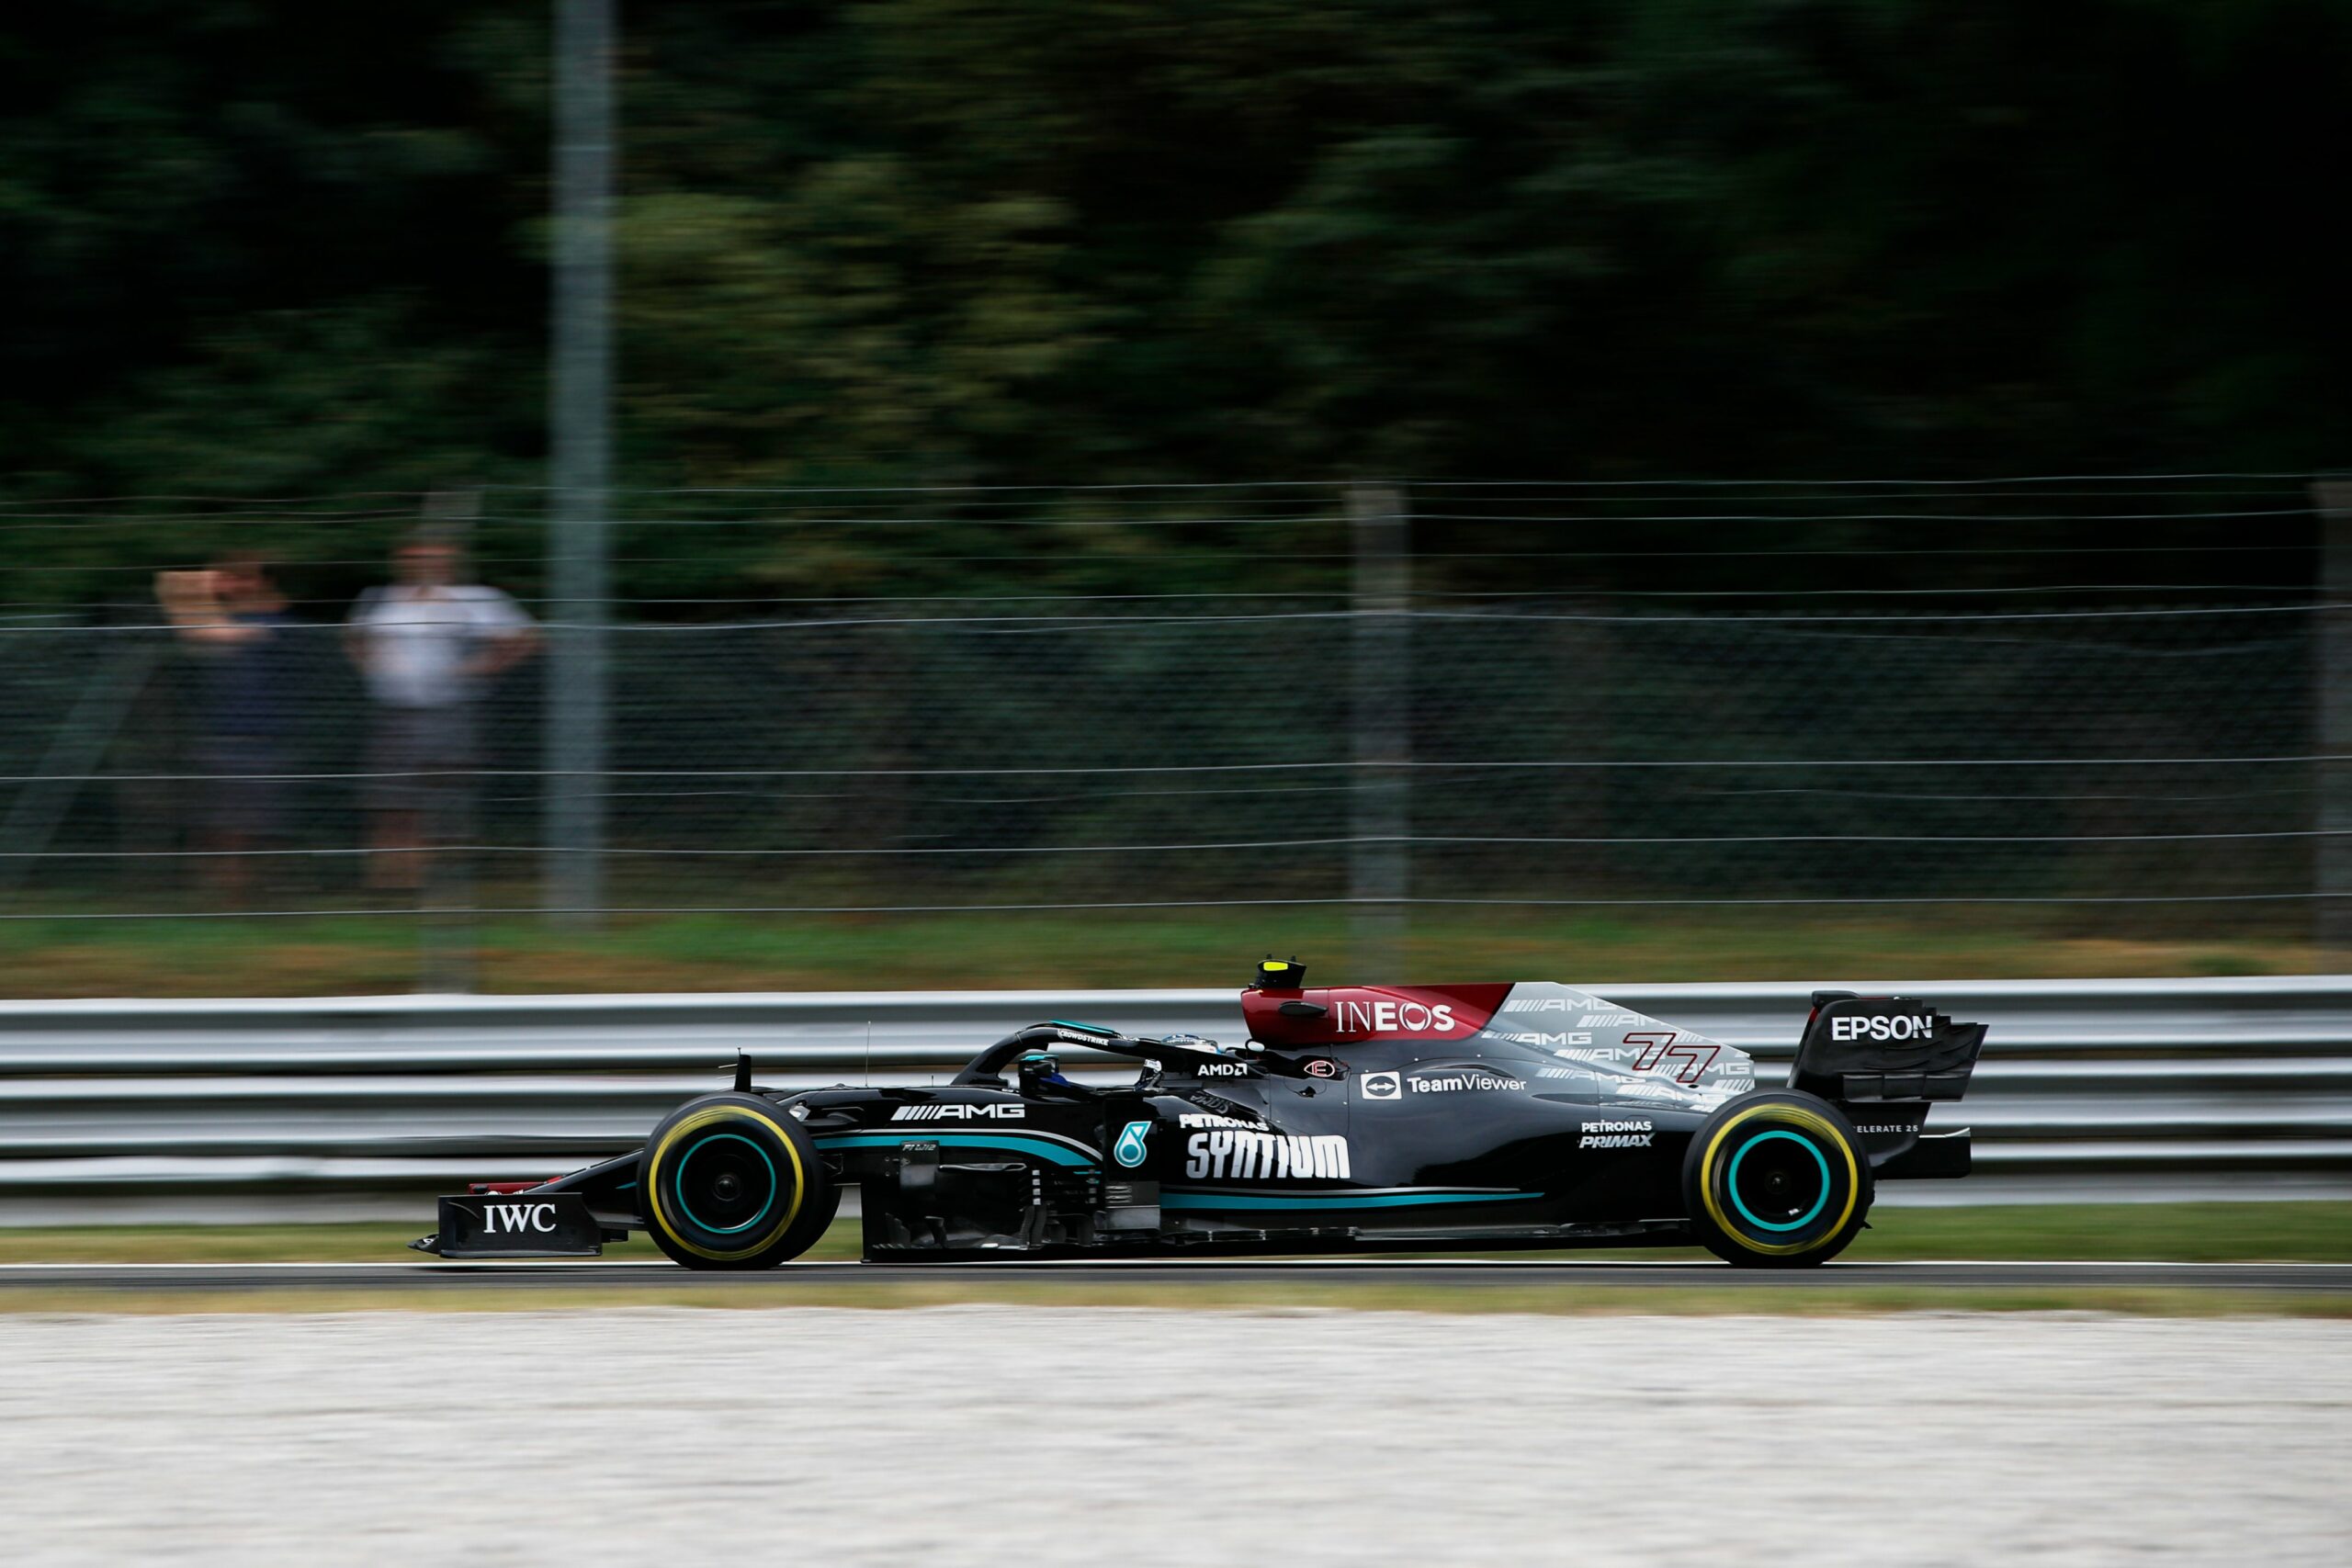 F1 - Officiel : Bottas s'élancera du fond de la grille dimanche à Monza